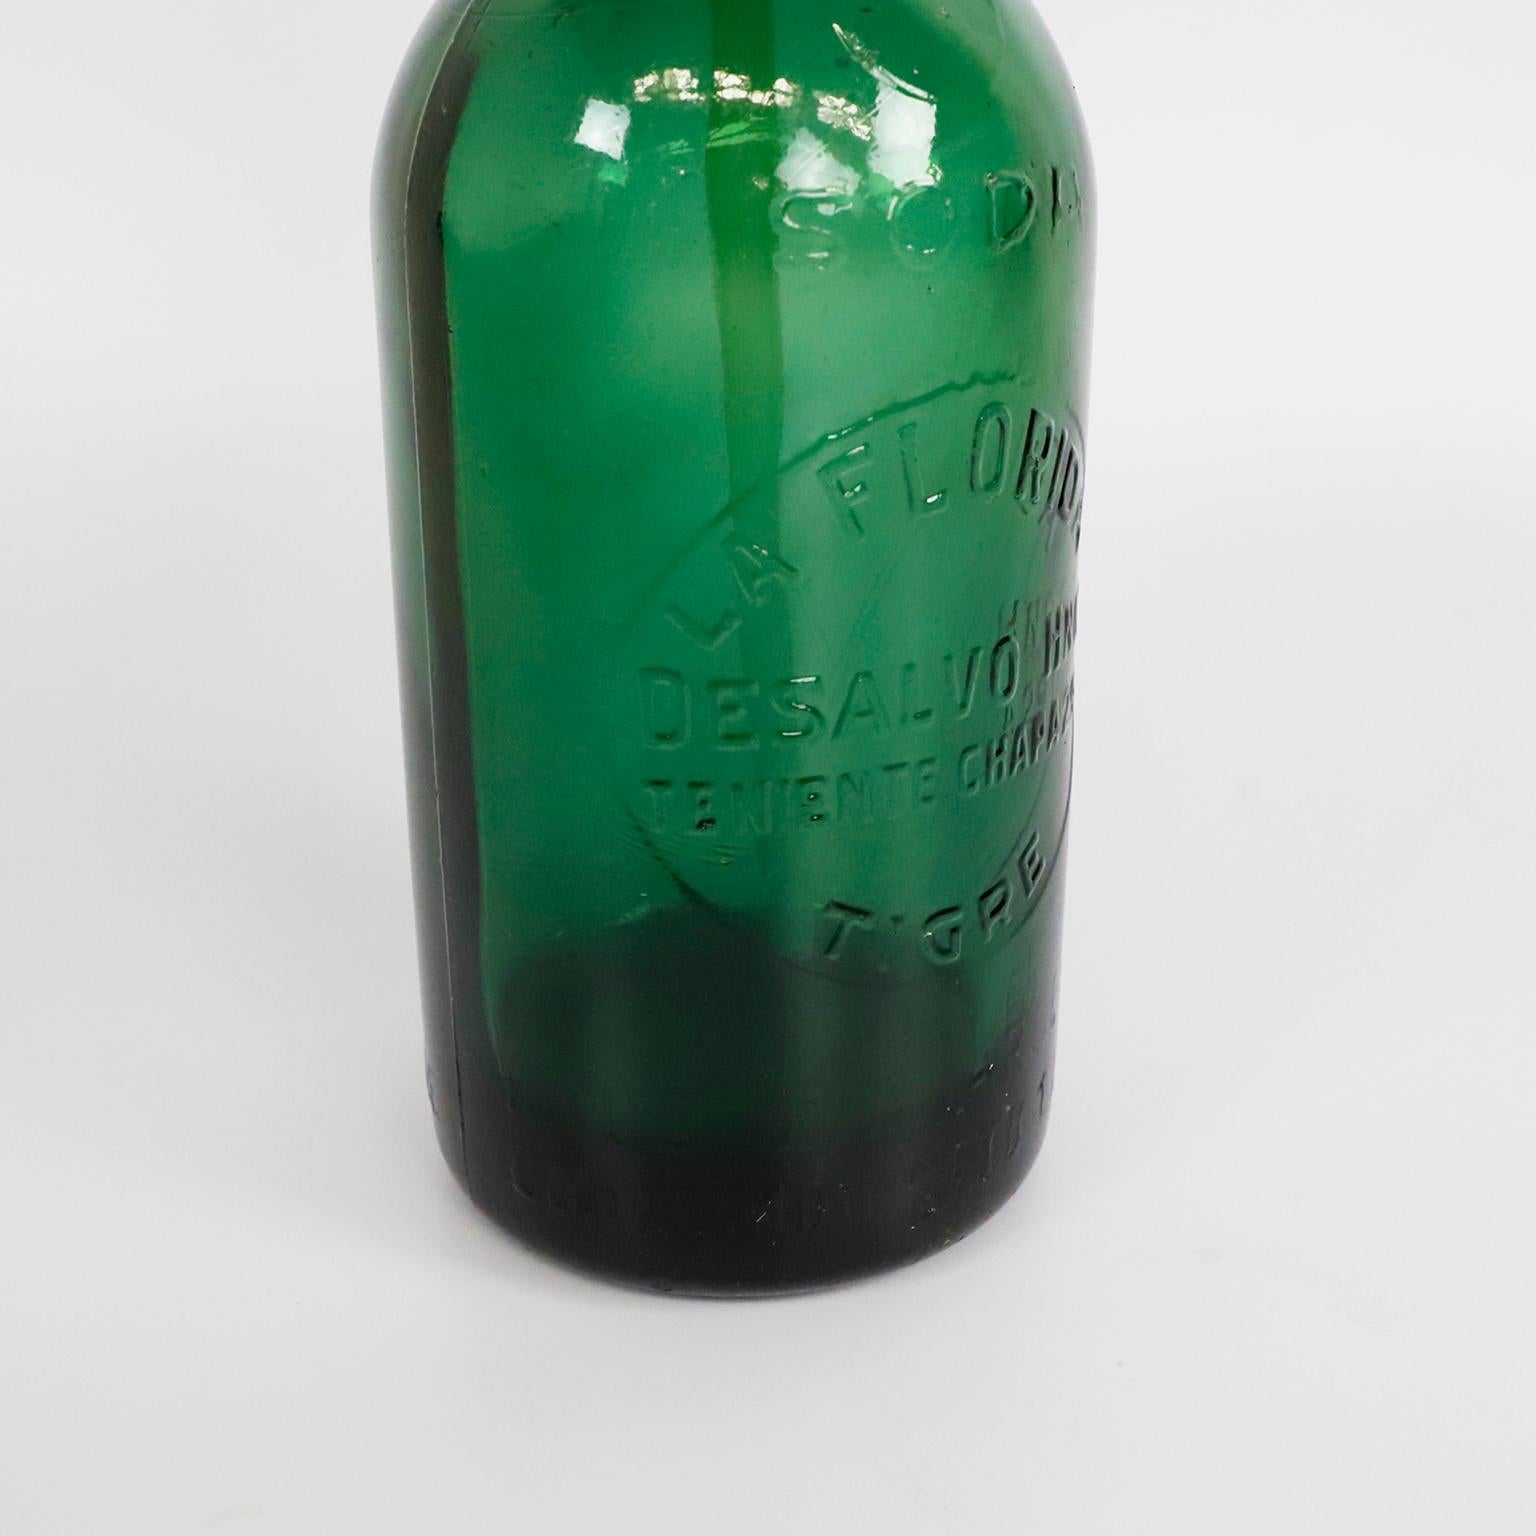 Um 1940. Wir bieten diese Vintage grün Soda Siphon, hergestellt in Argentinien.